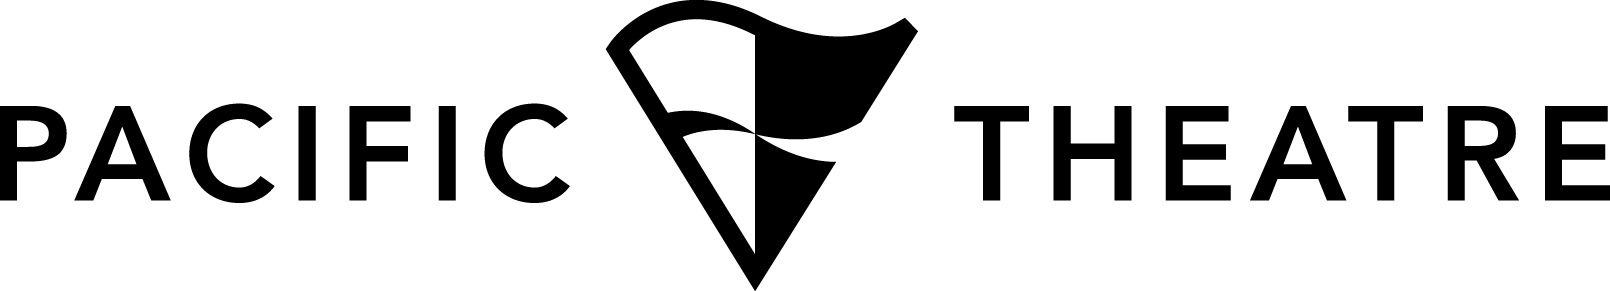 PACIFIC THEATRE logo